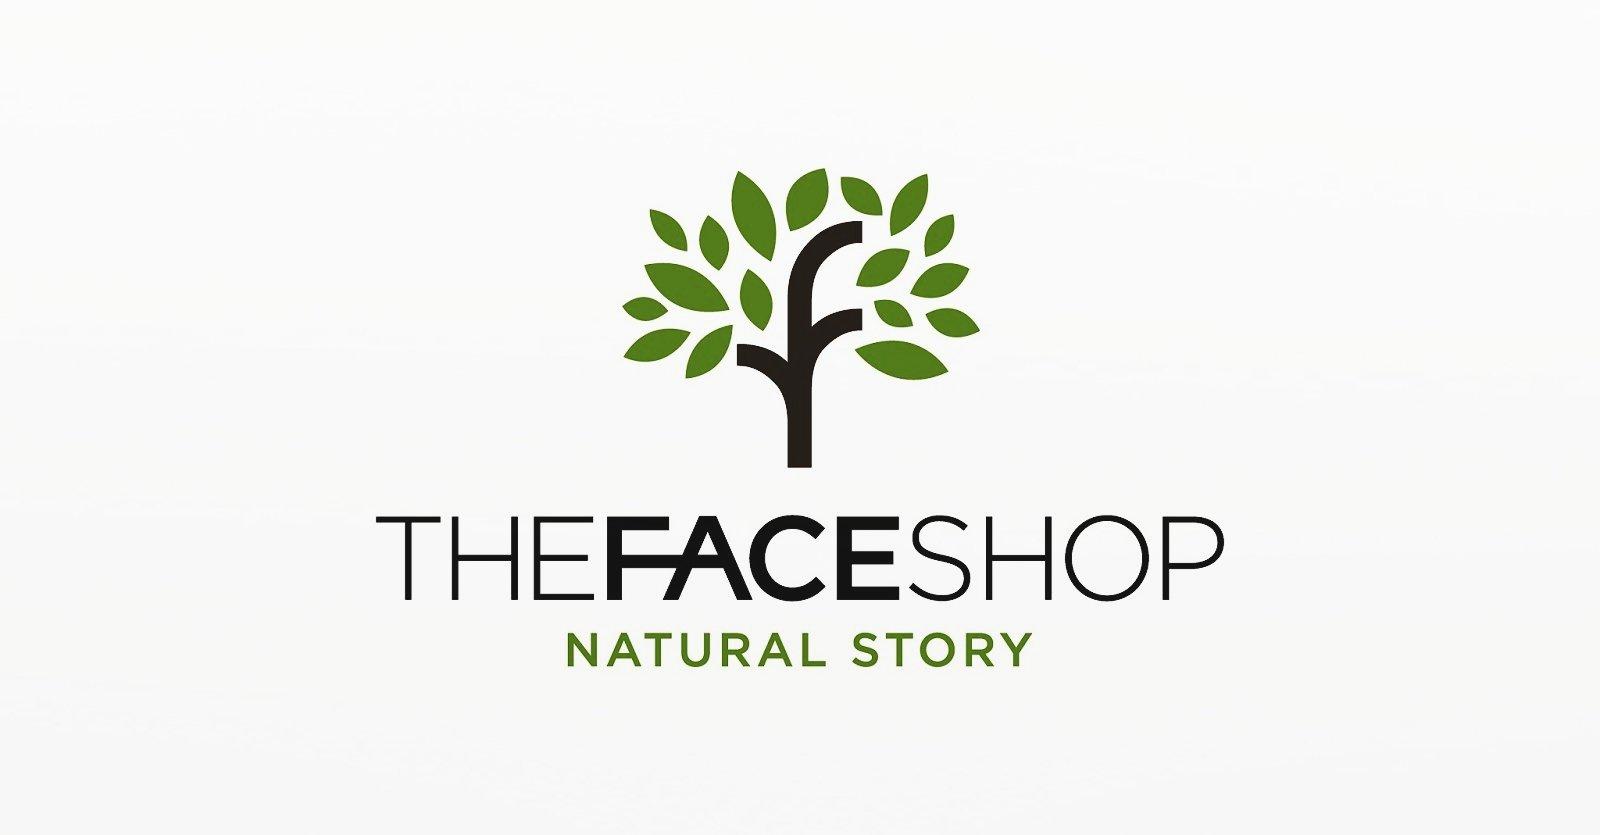 The Face Shop là thương hiệu mỹ phẩm quen thuộc đối với nhiều tín đồ làm đẹp (ảnh: internet)